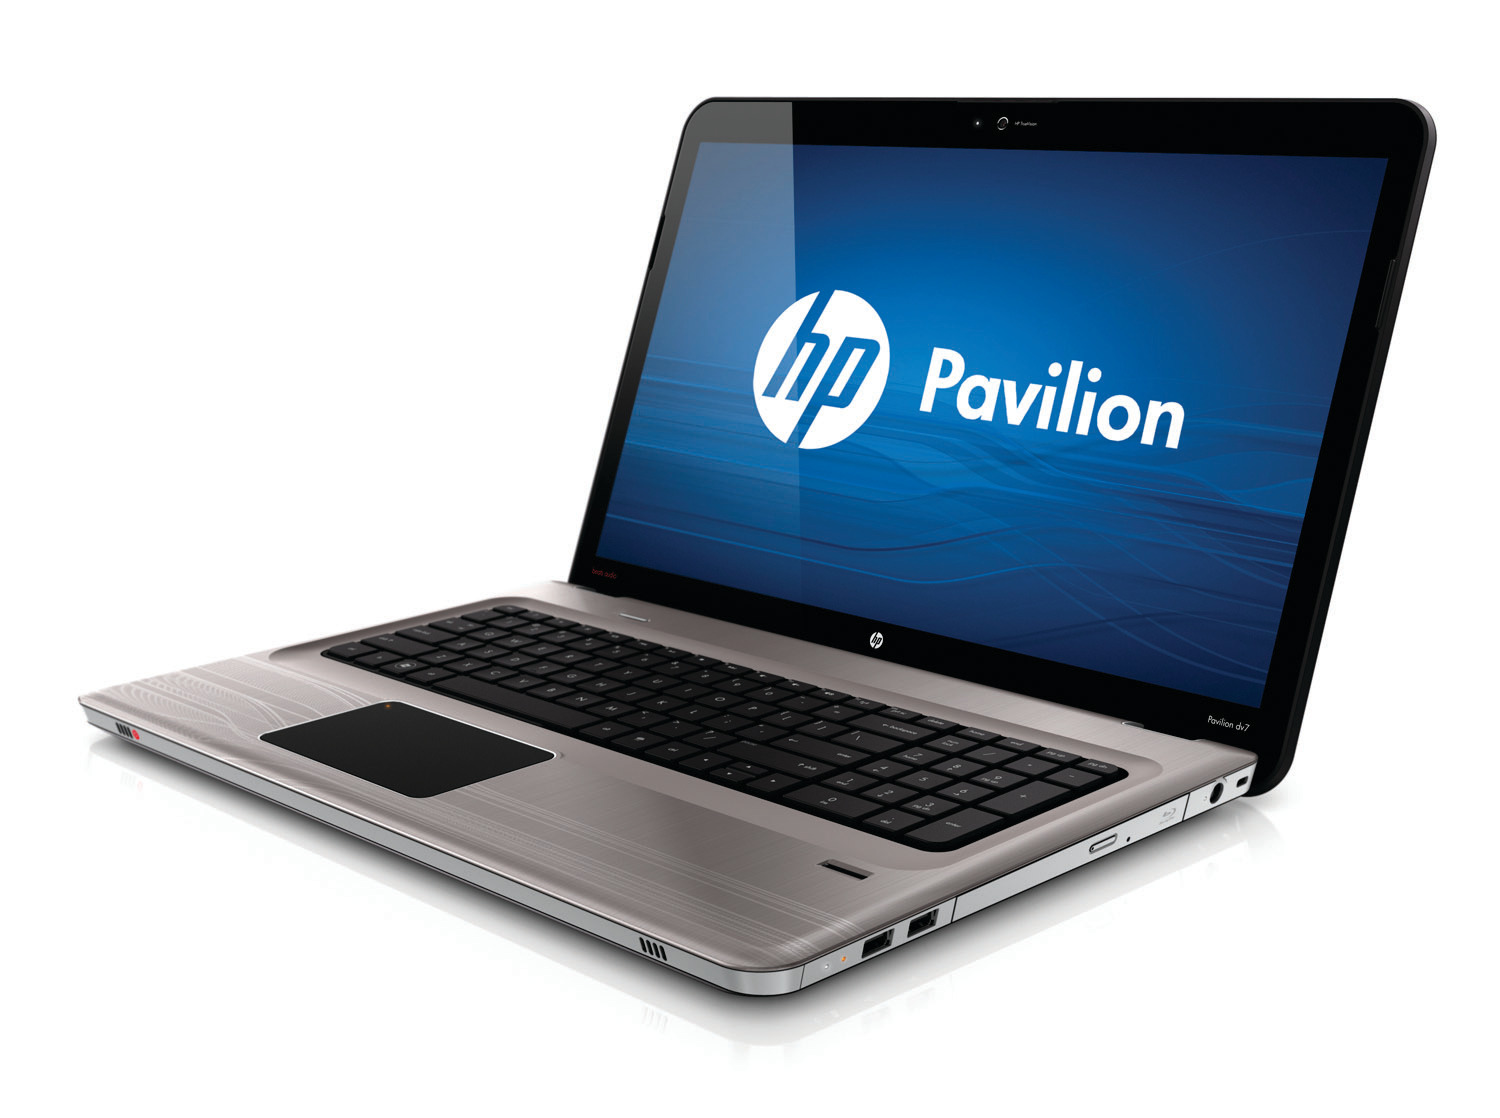 Pavilion dv7-4200 Entertainment Notebook PC series